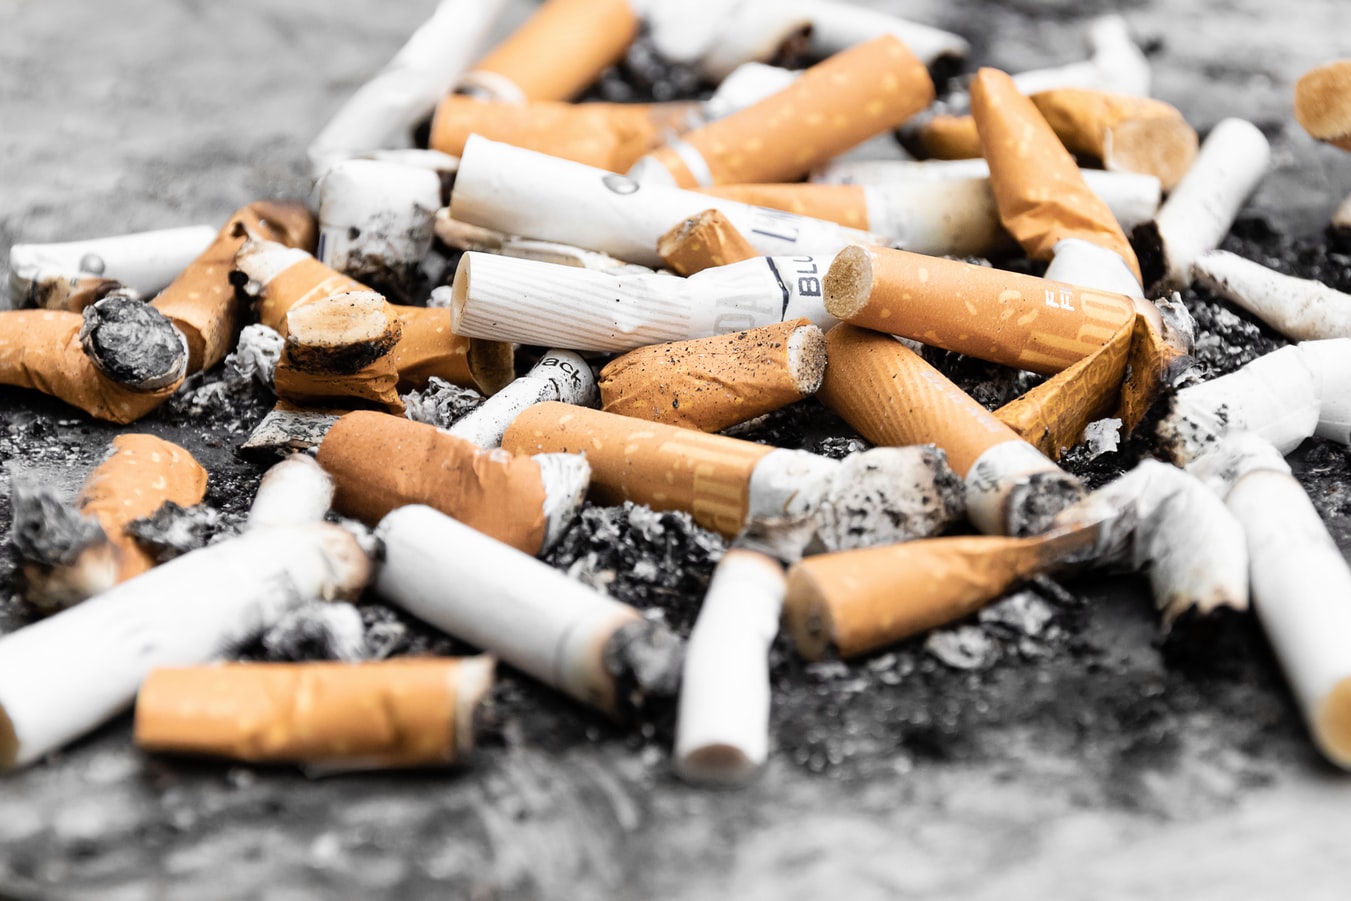 La OMS busca que más de 100 millones de personas dejen de fumar. (Foto Prensa Libre: Unsplash)